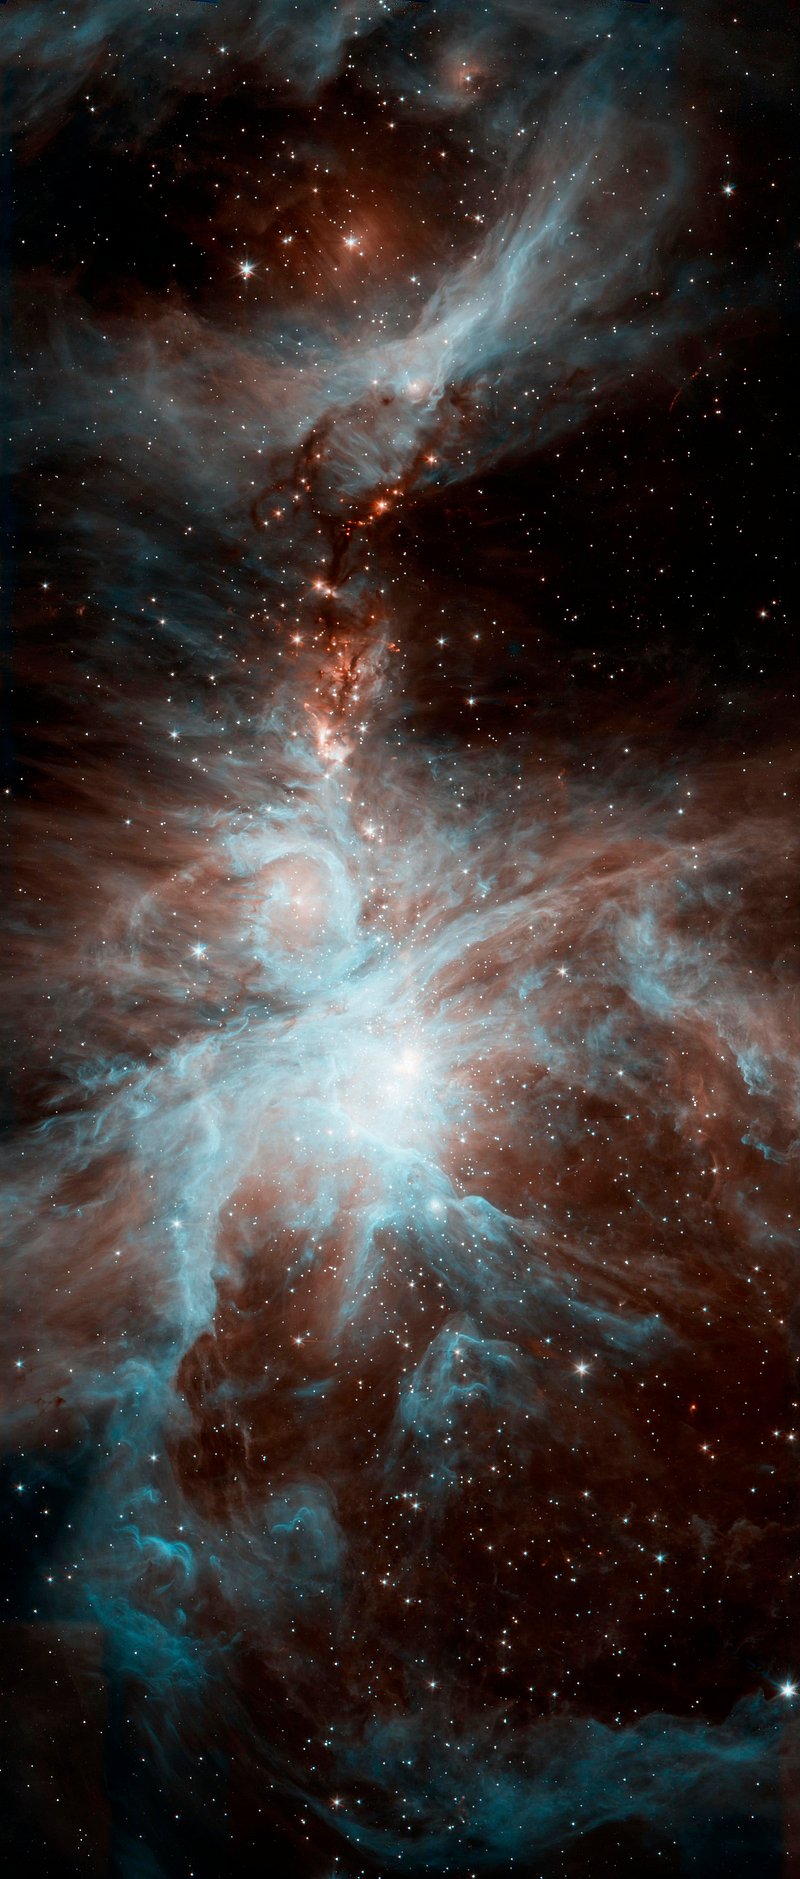 Image nebula taken using NASA